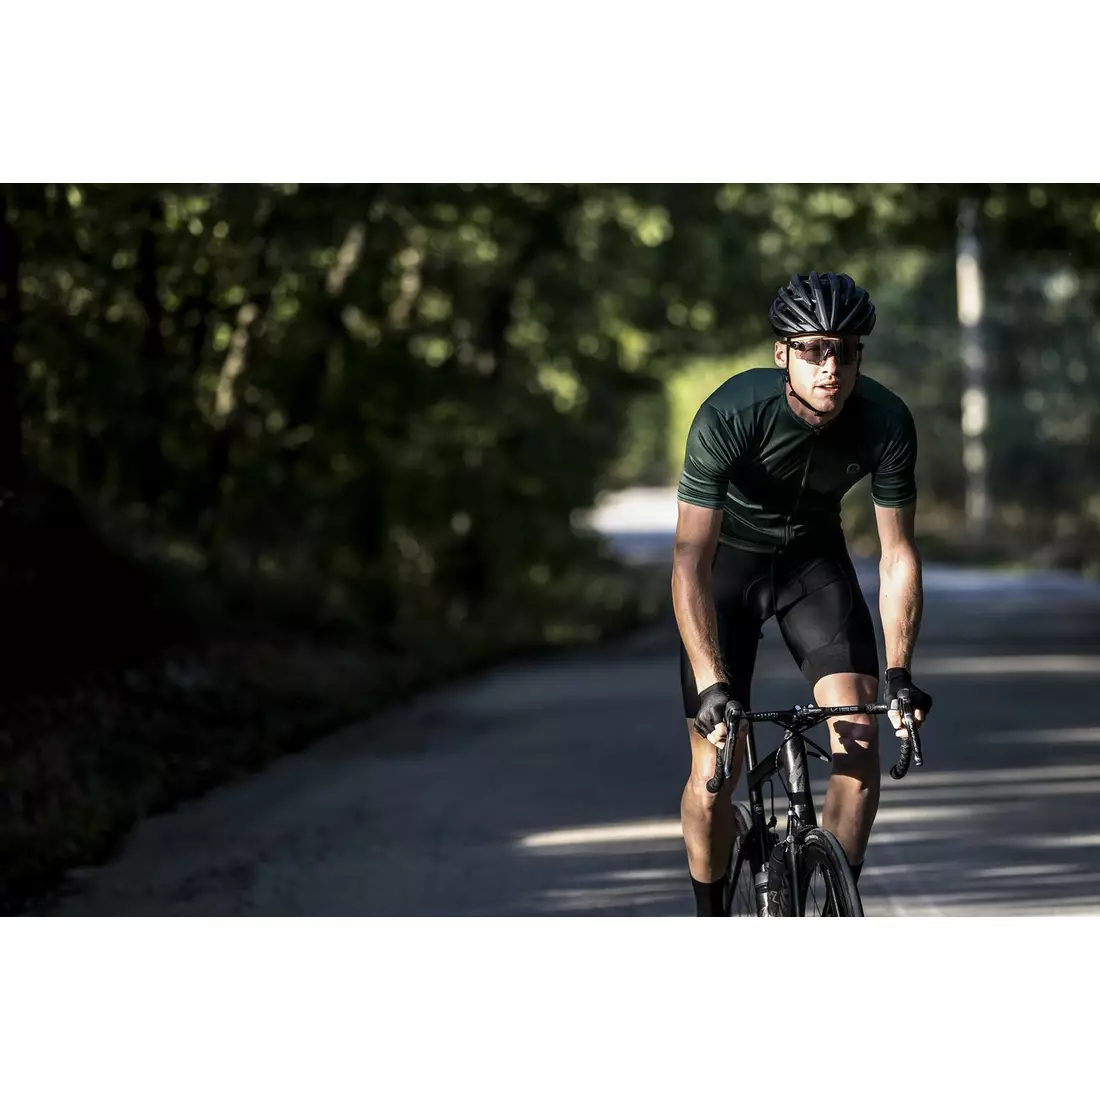 ROGELLI ESSENTIAL pánsky cyklistický dres, zelená